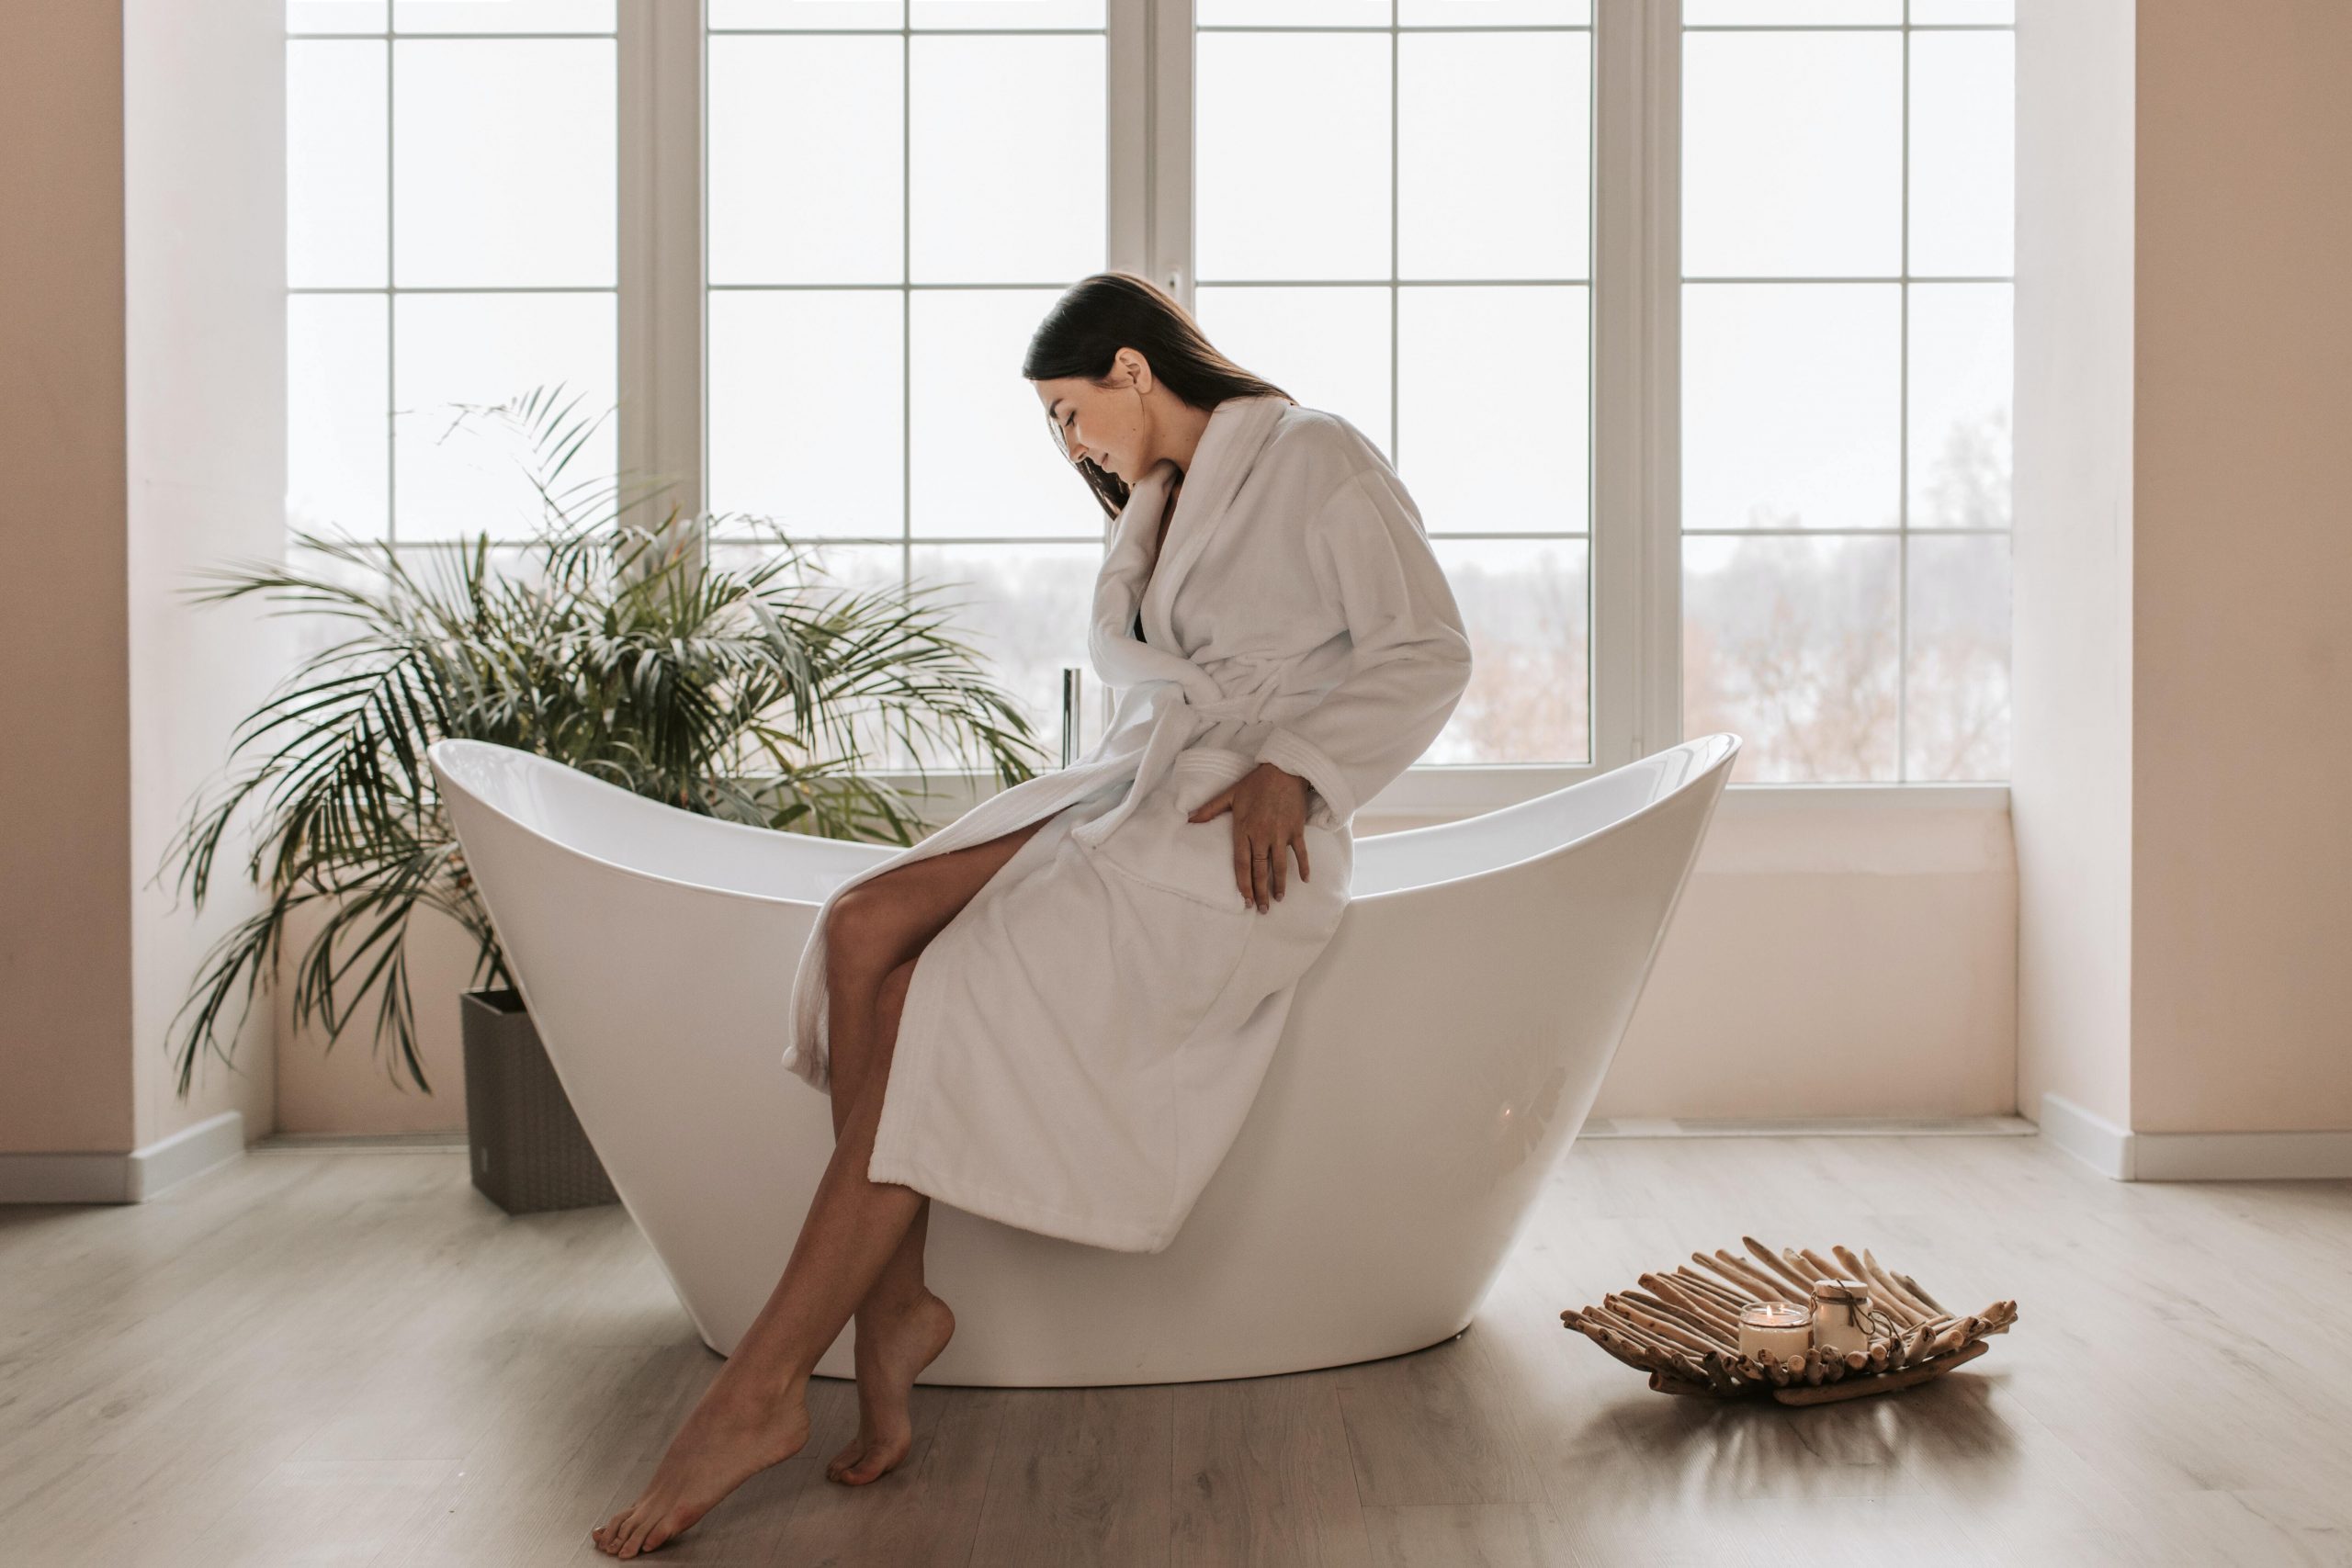 woman sitting on bathtub